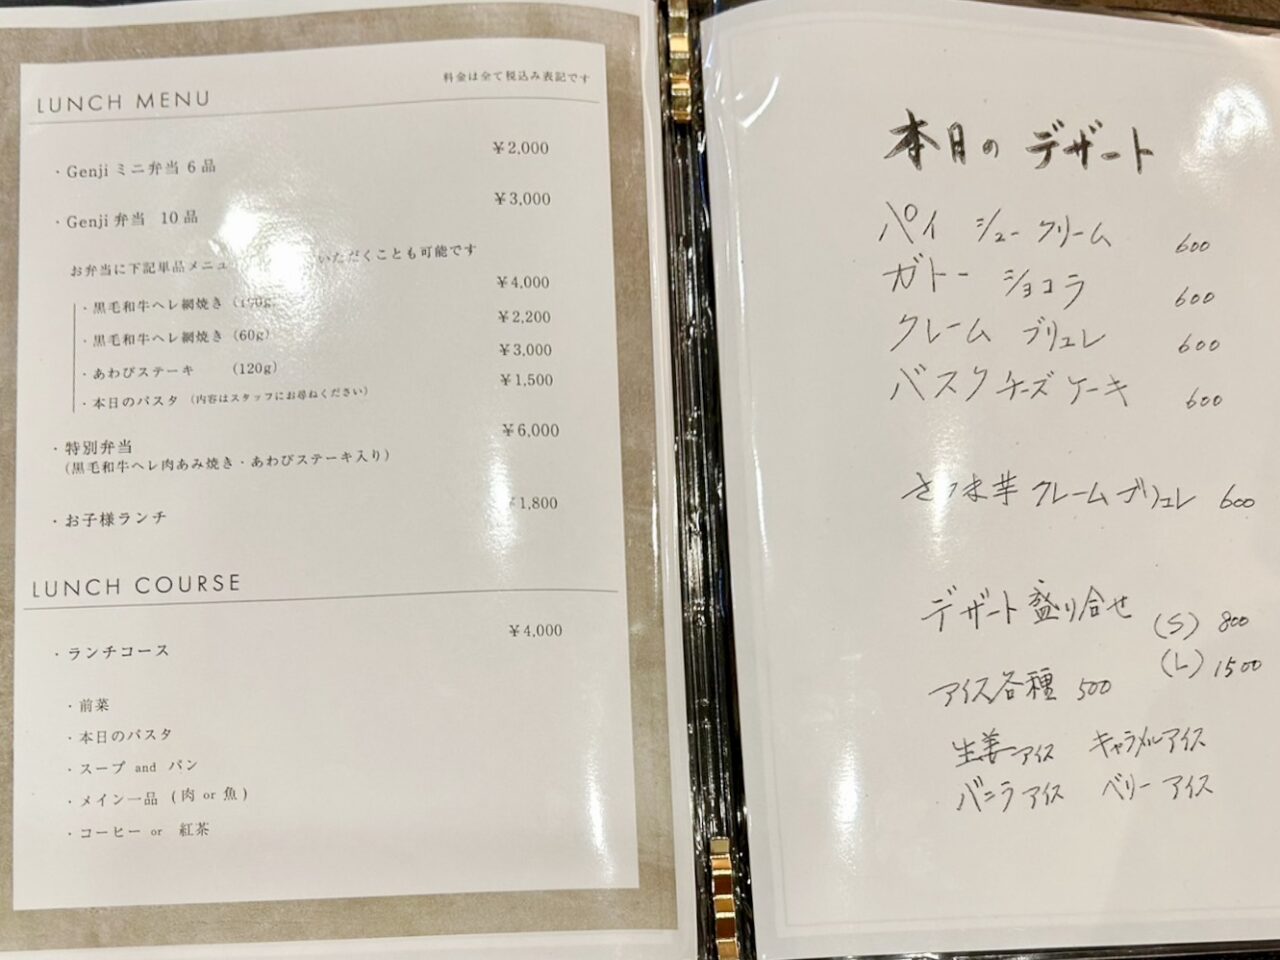 大阪・帝塚山にある和洋折衷の創作料理「Genji(源氏)」のランチとデザートメニューです。